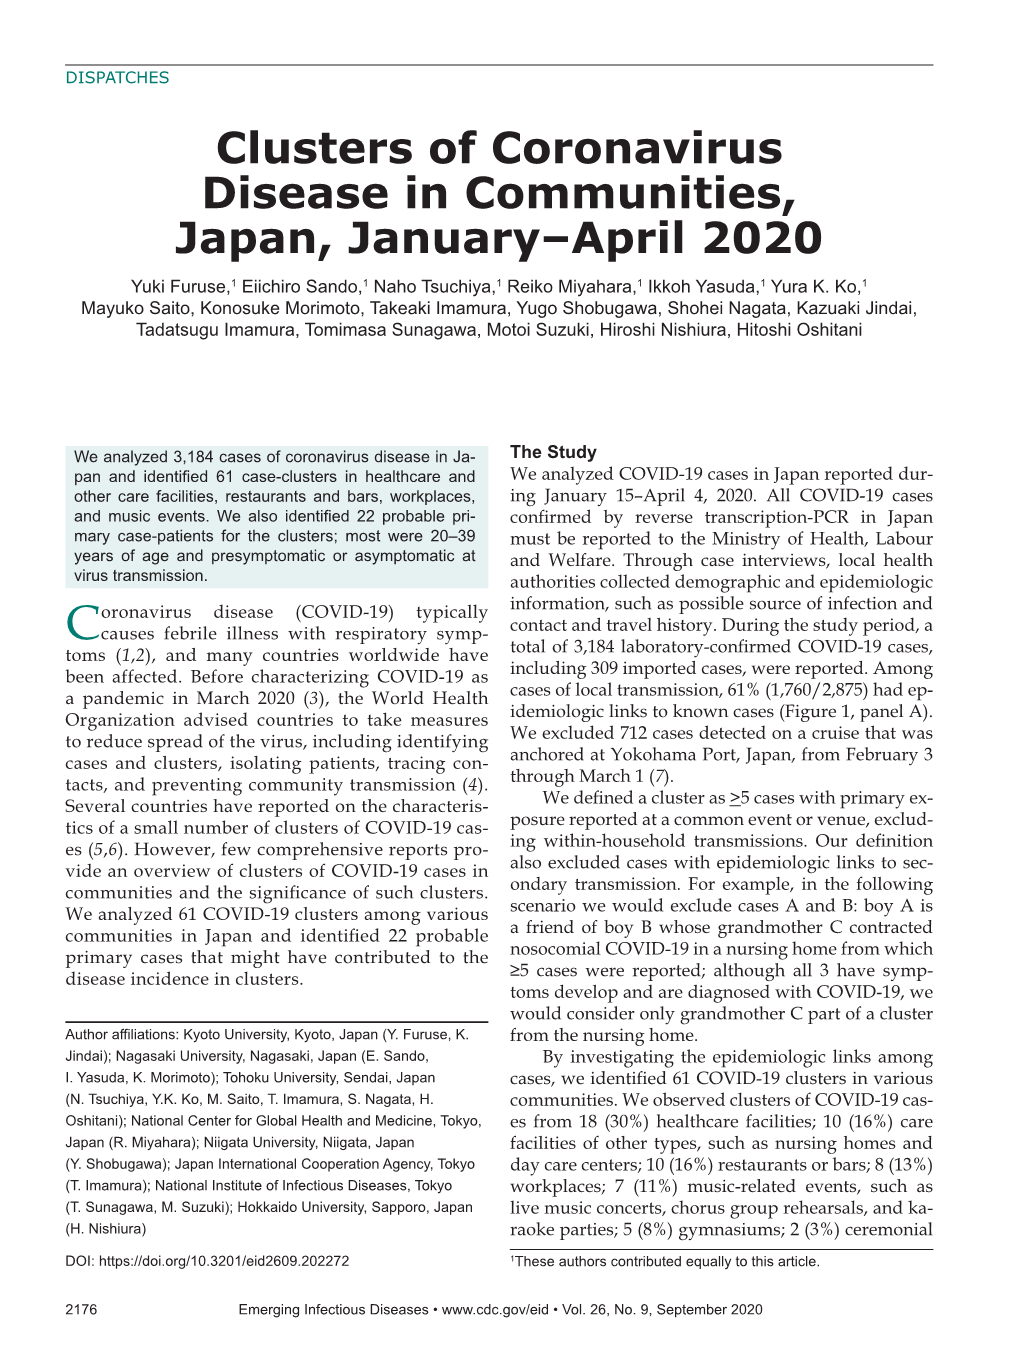 Clusters of Coronavirus Disease in Communities, Japan, January–April 2020 Yuki Furuse,1 Eiichiro Sando,1 Naho Tsuchiya,1 Reiko Miyahara,1 Ikkoh Yasuda,1 Yura K